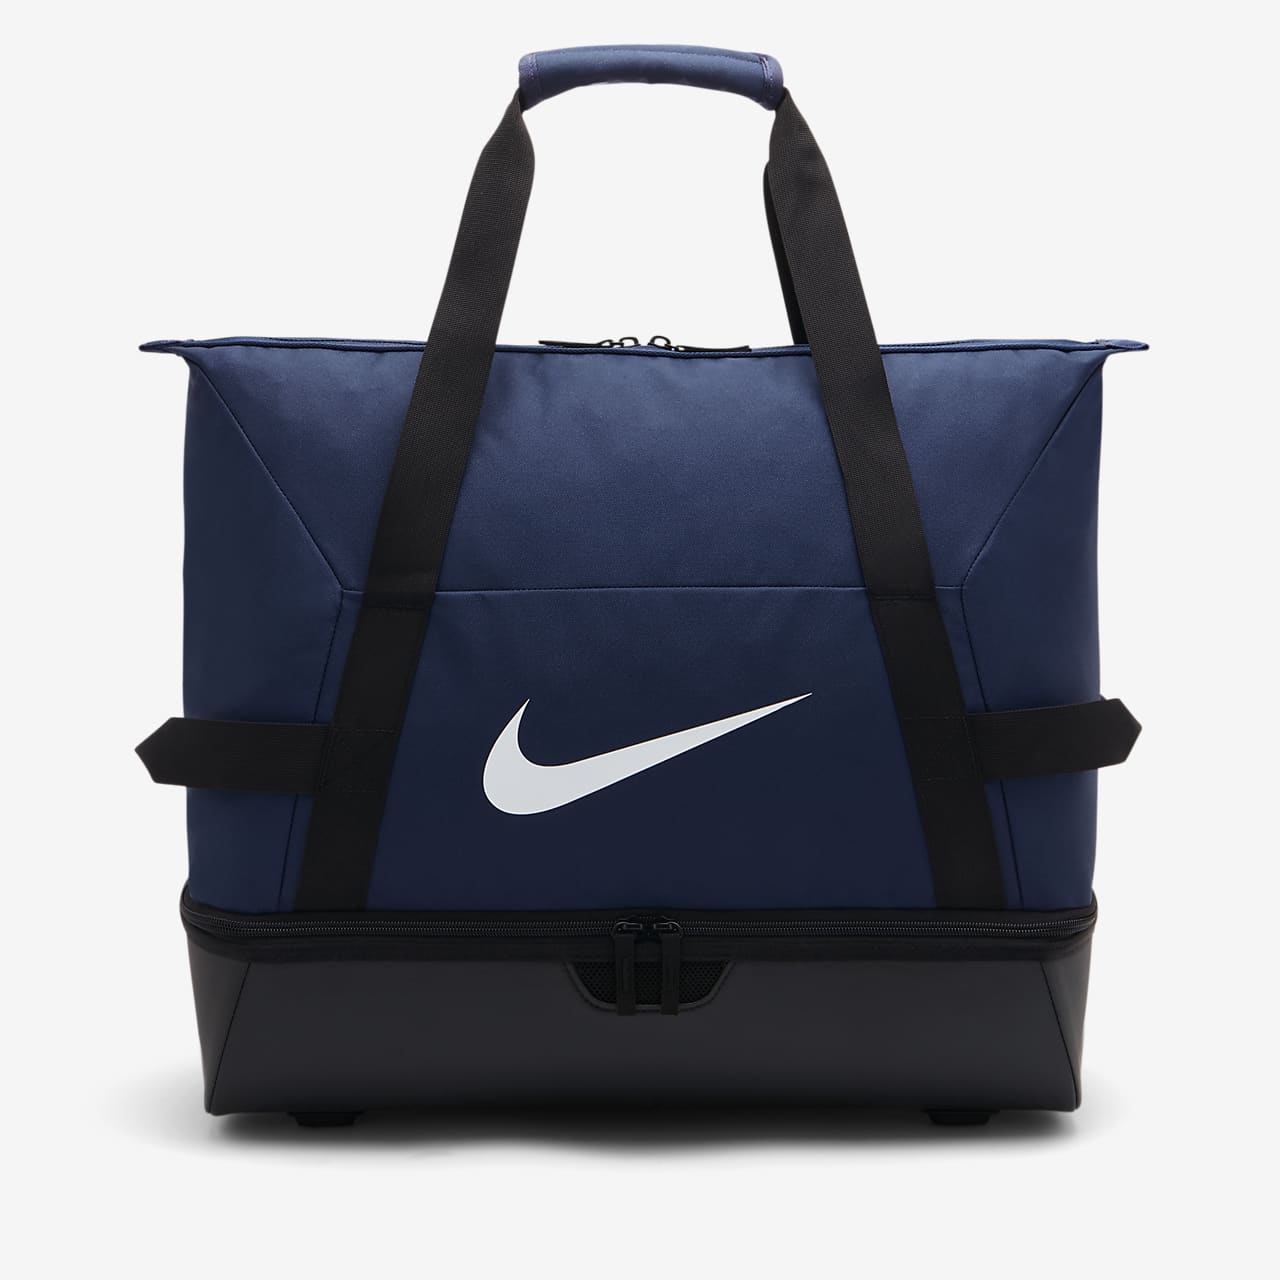 Τσάντα γυμναστηρίου για ποδόσφαιρο Nike Academy Team Hardcase (μέγεθος Large)